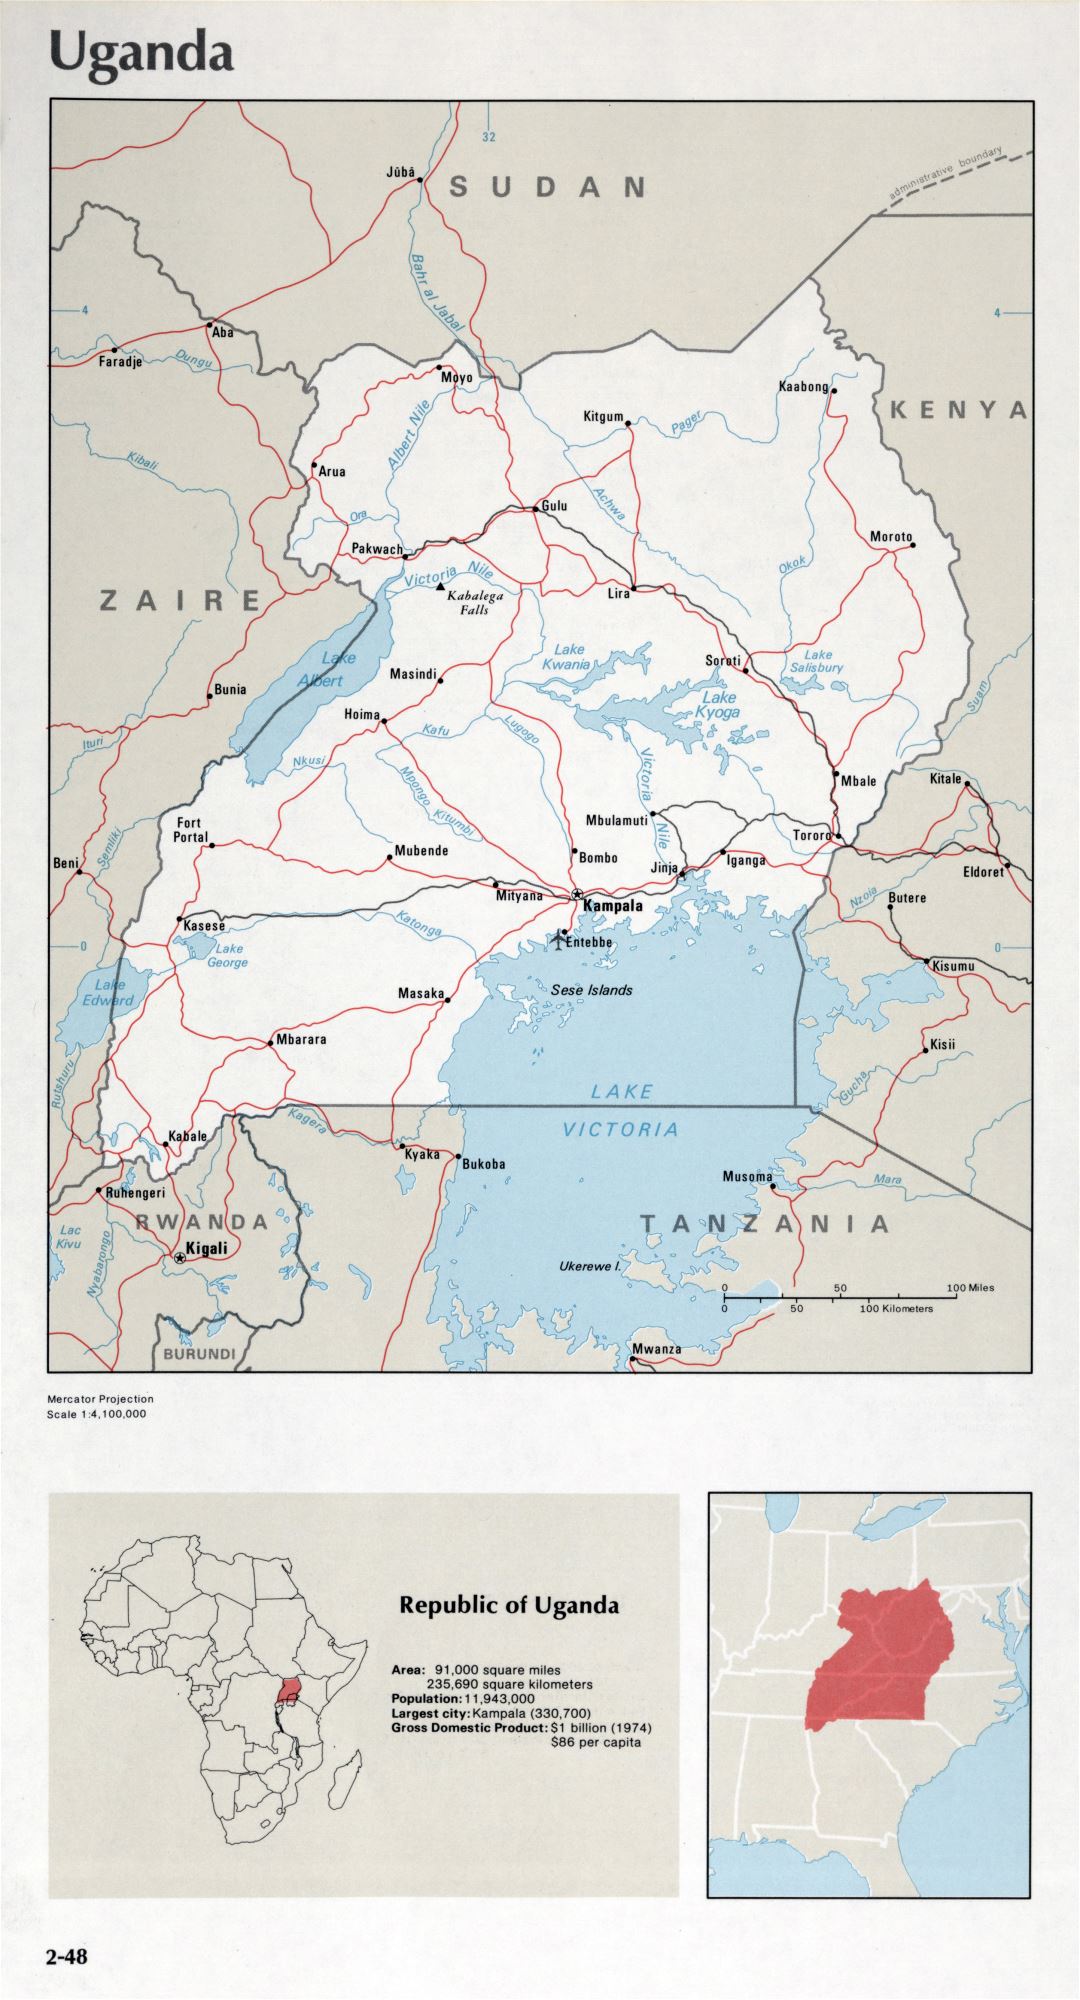 Map of Uganda (2-48)